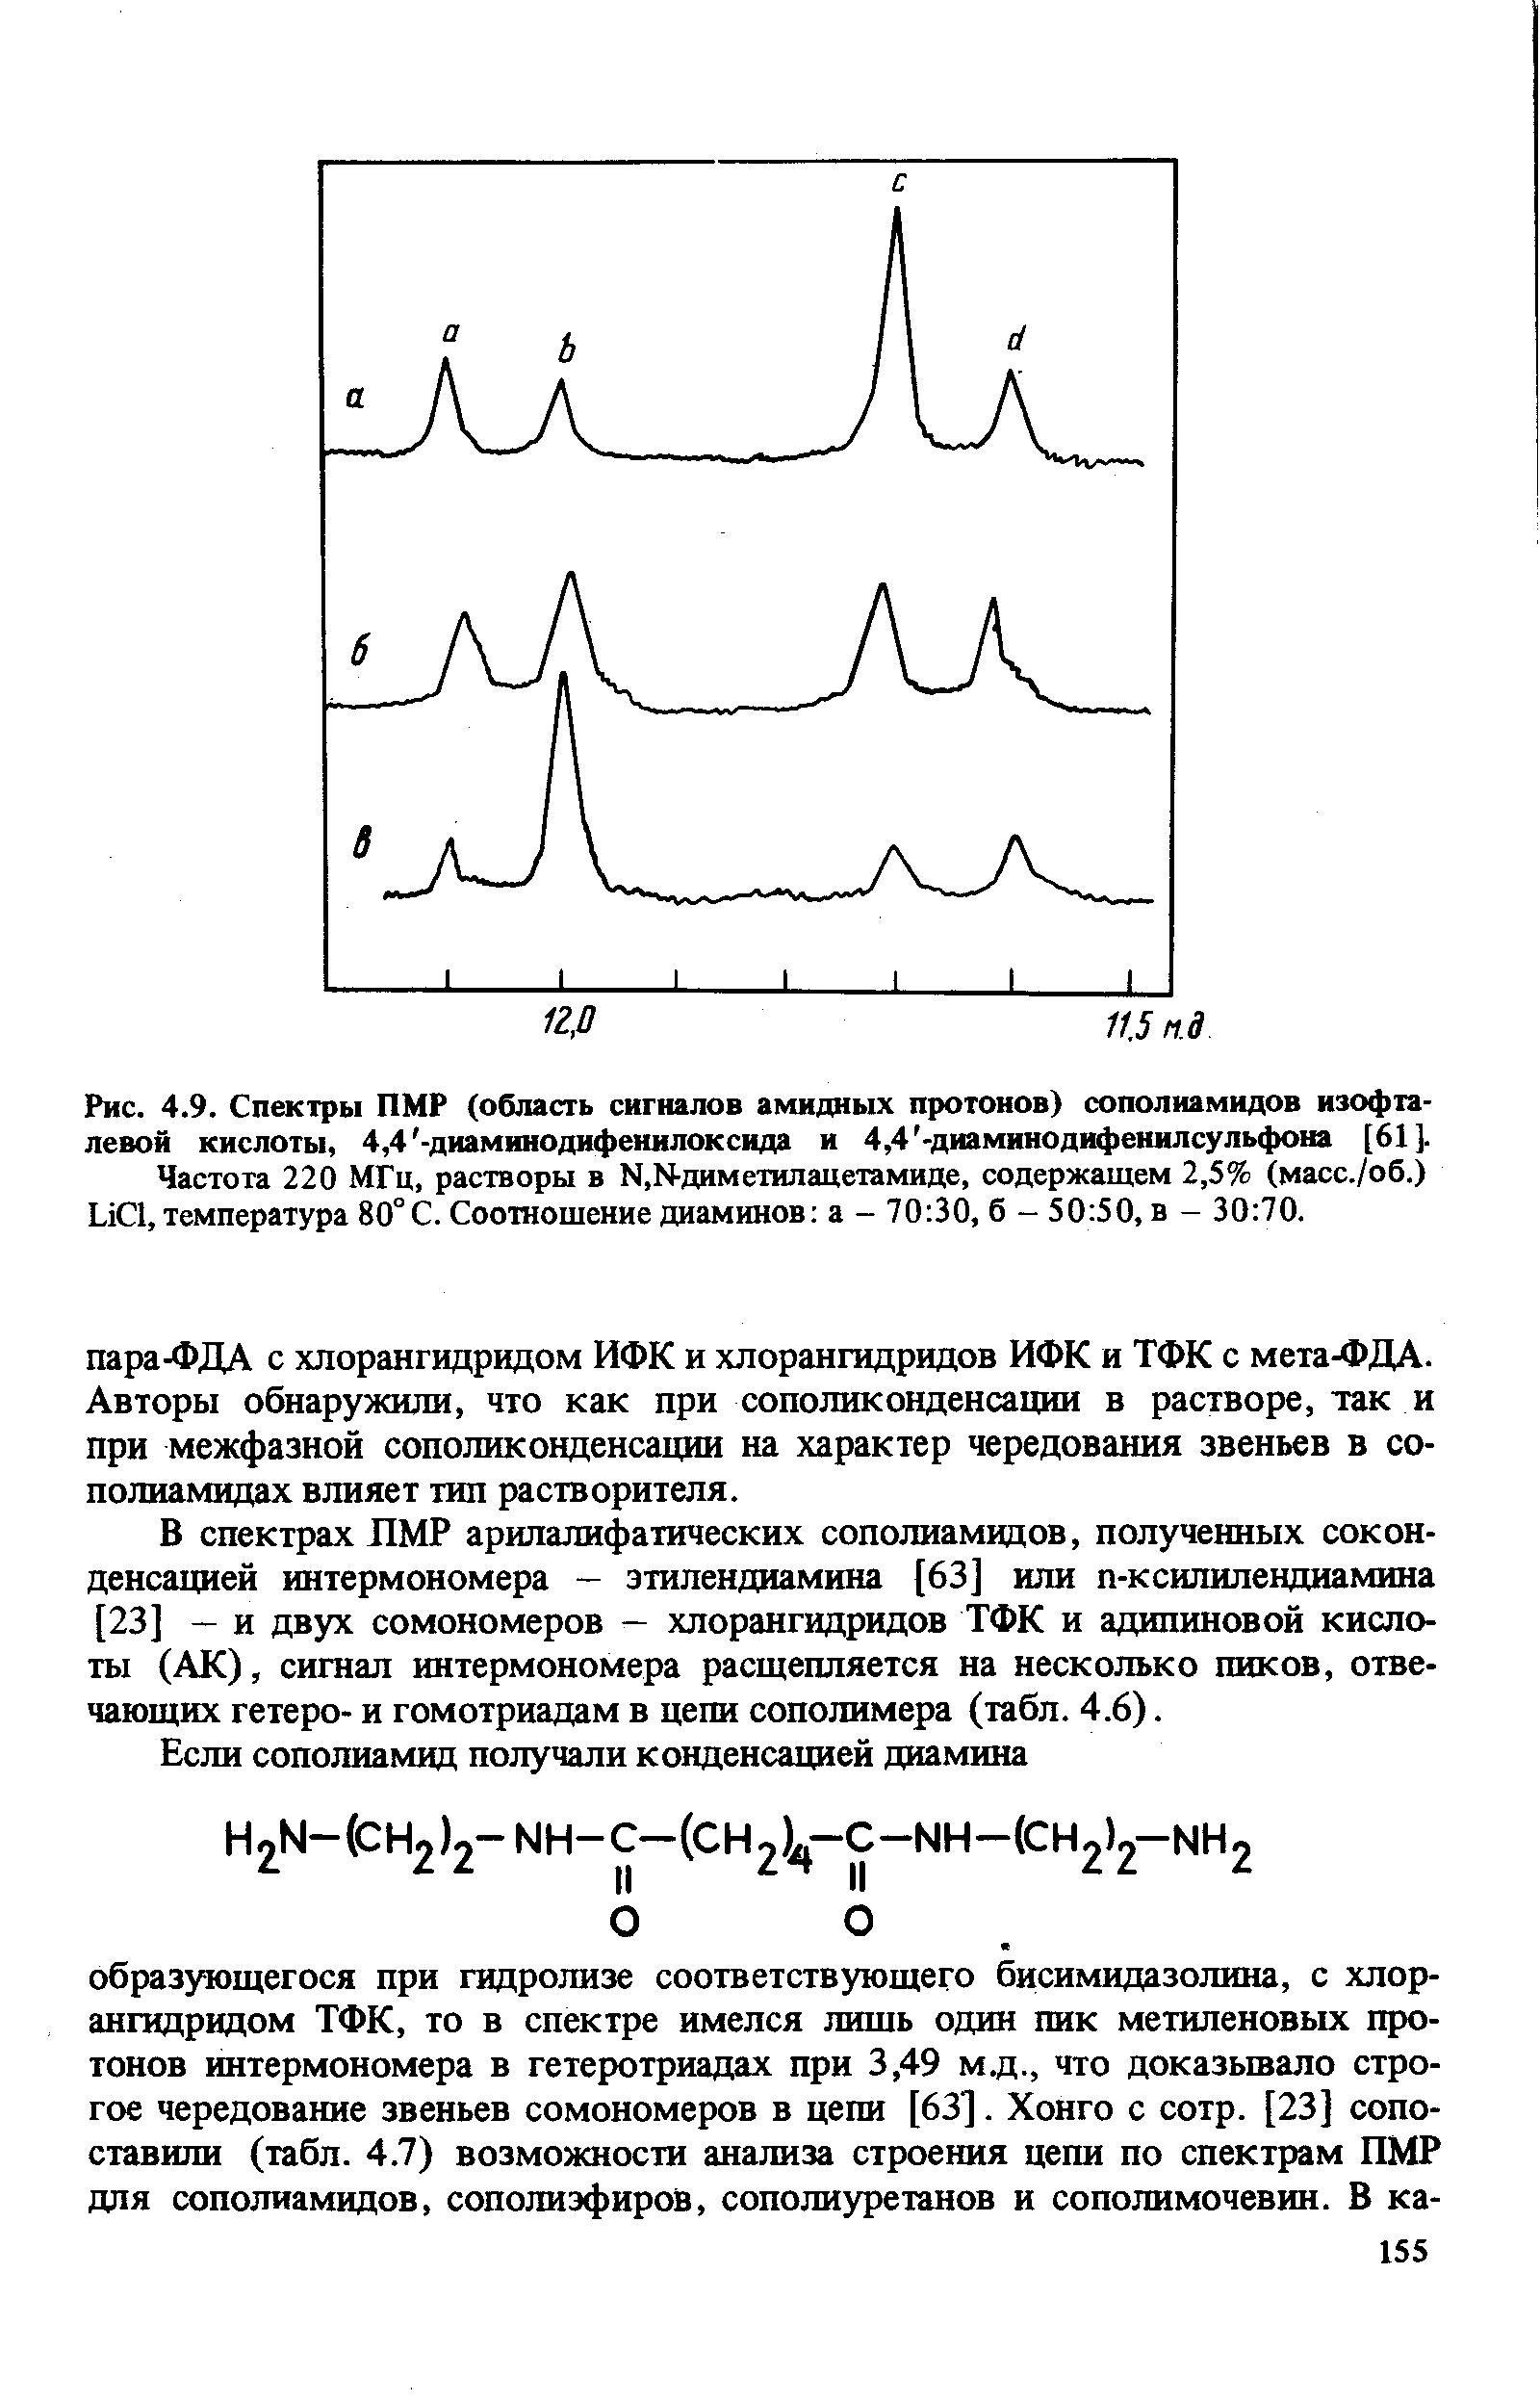 В спектрах ЛМР арилалифатических сополиамидов, полученных соконденсацией интермономера - этилендиамина [63] или п-ксилилендиамина [23] — и двух сомономеров — хлорангидридов ТФК и адипиновой кислоты (АК), сигнал интермономера расщепляется на несколько пиков, отвечающих гетеро- и гомотриадам в цепи сополимера (табл. 4.6).